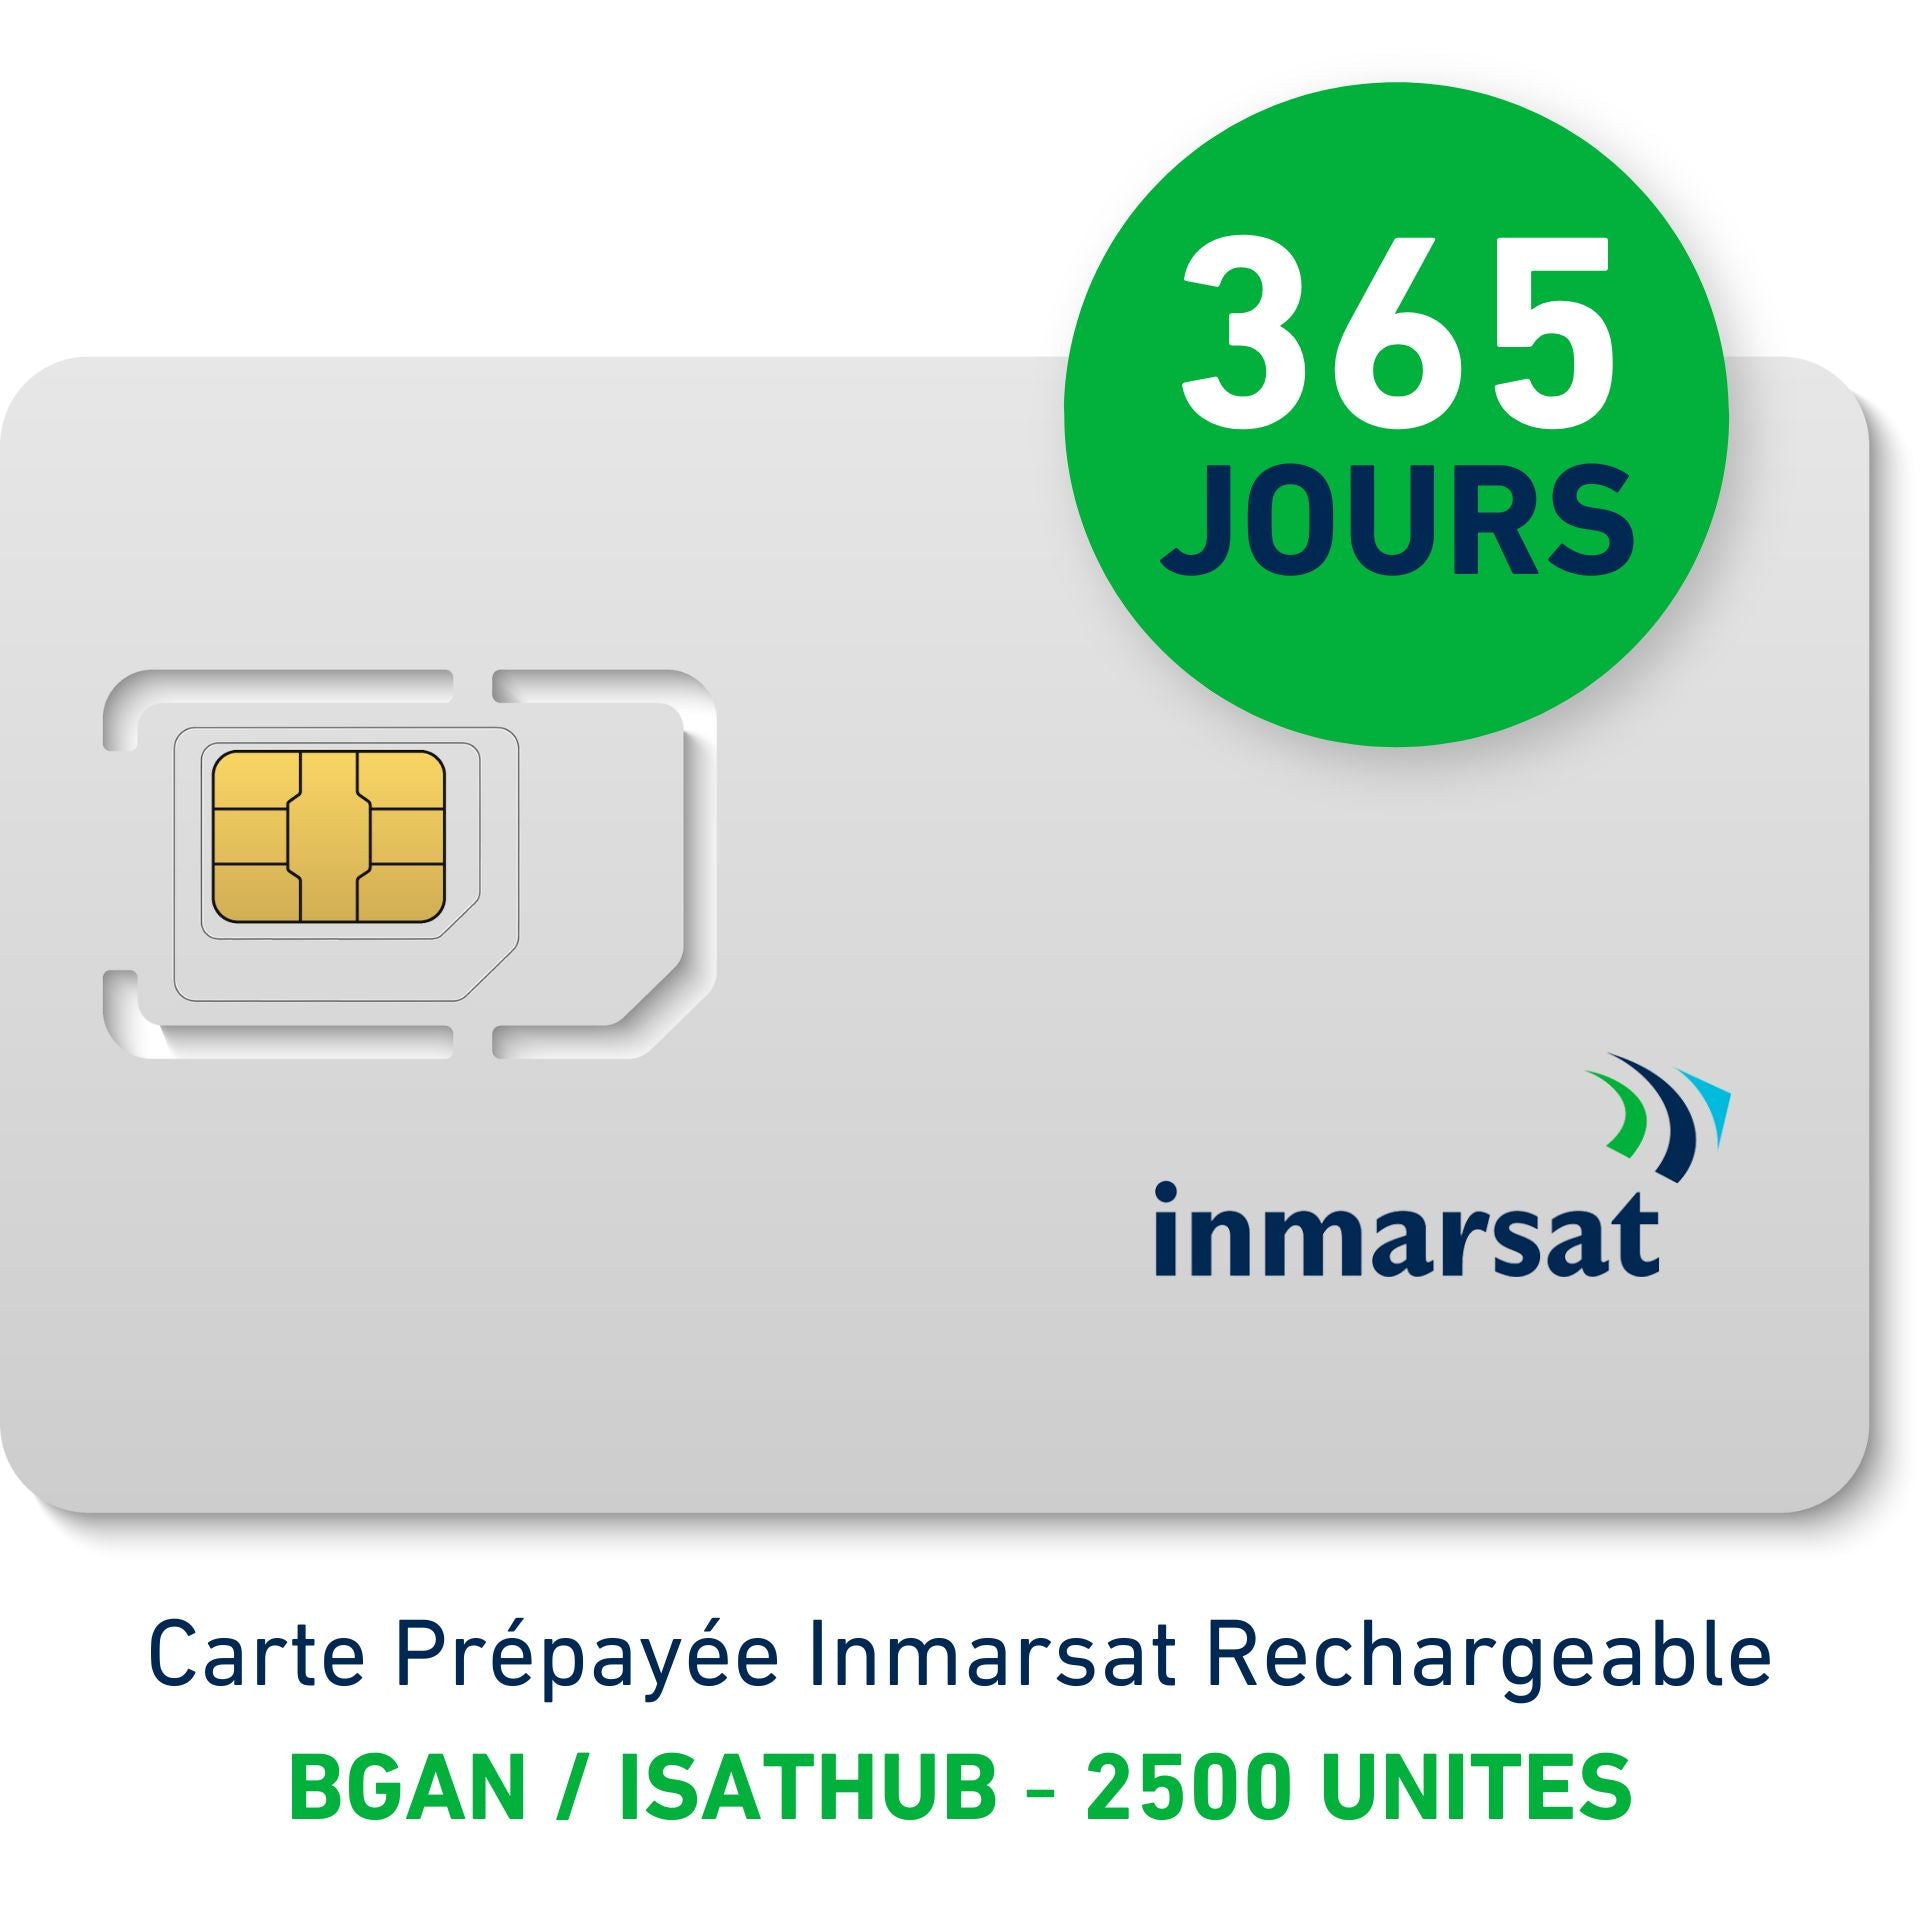 Carte Prépayée INMARSAT Rechargeable BGAN/IsatHub - 2500 UNITES - 365 JOURS